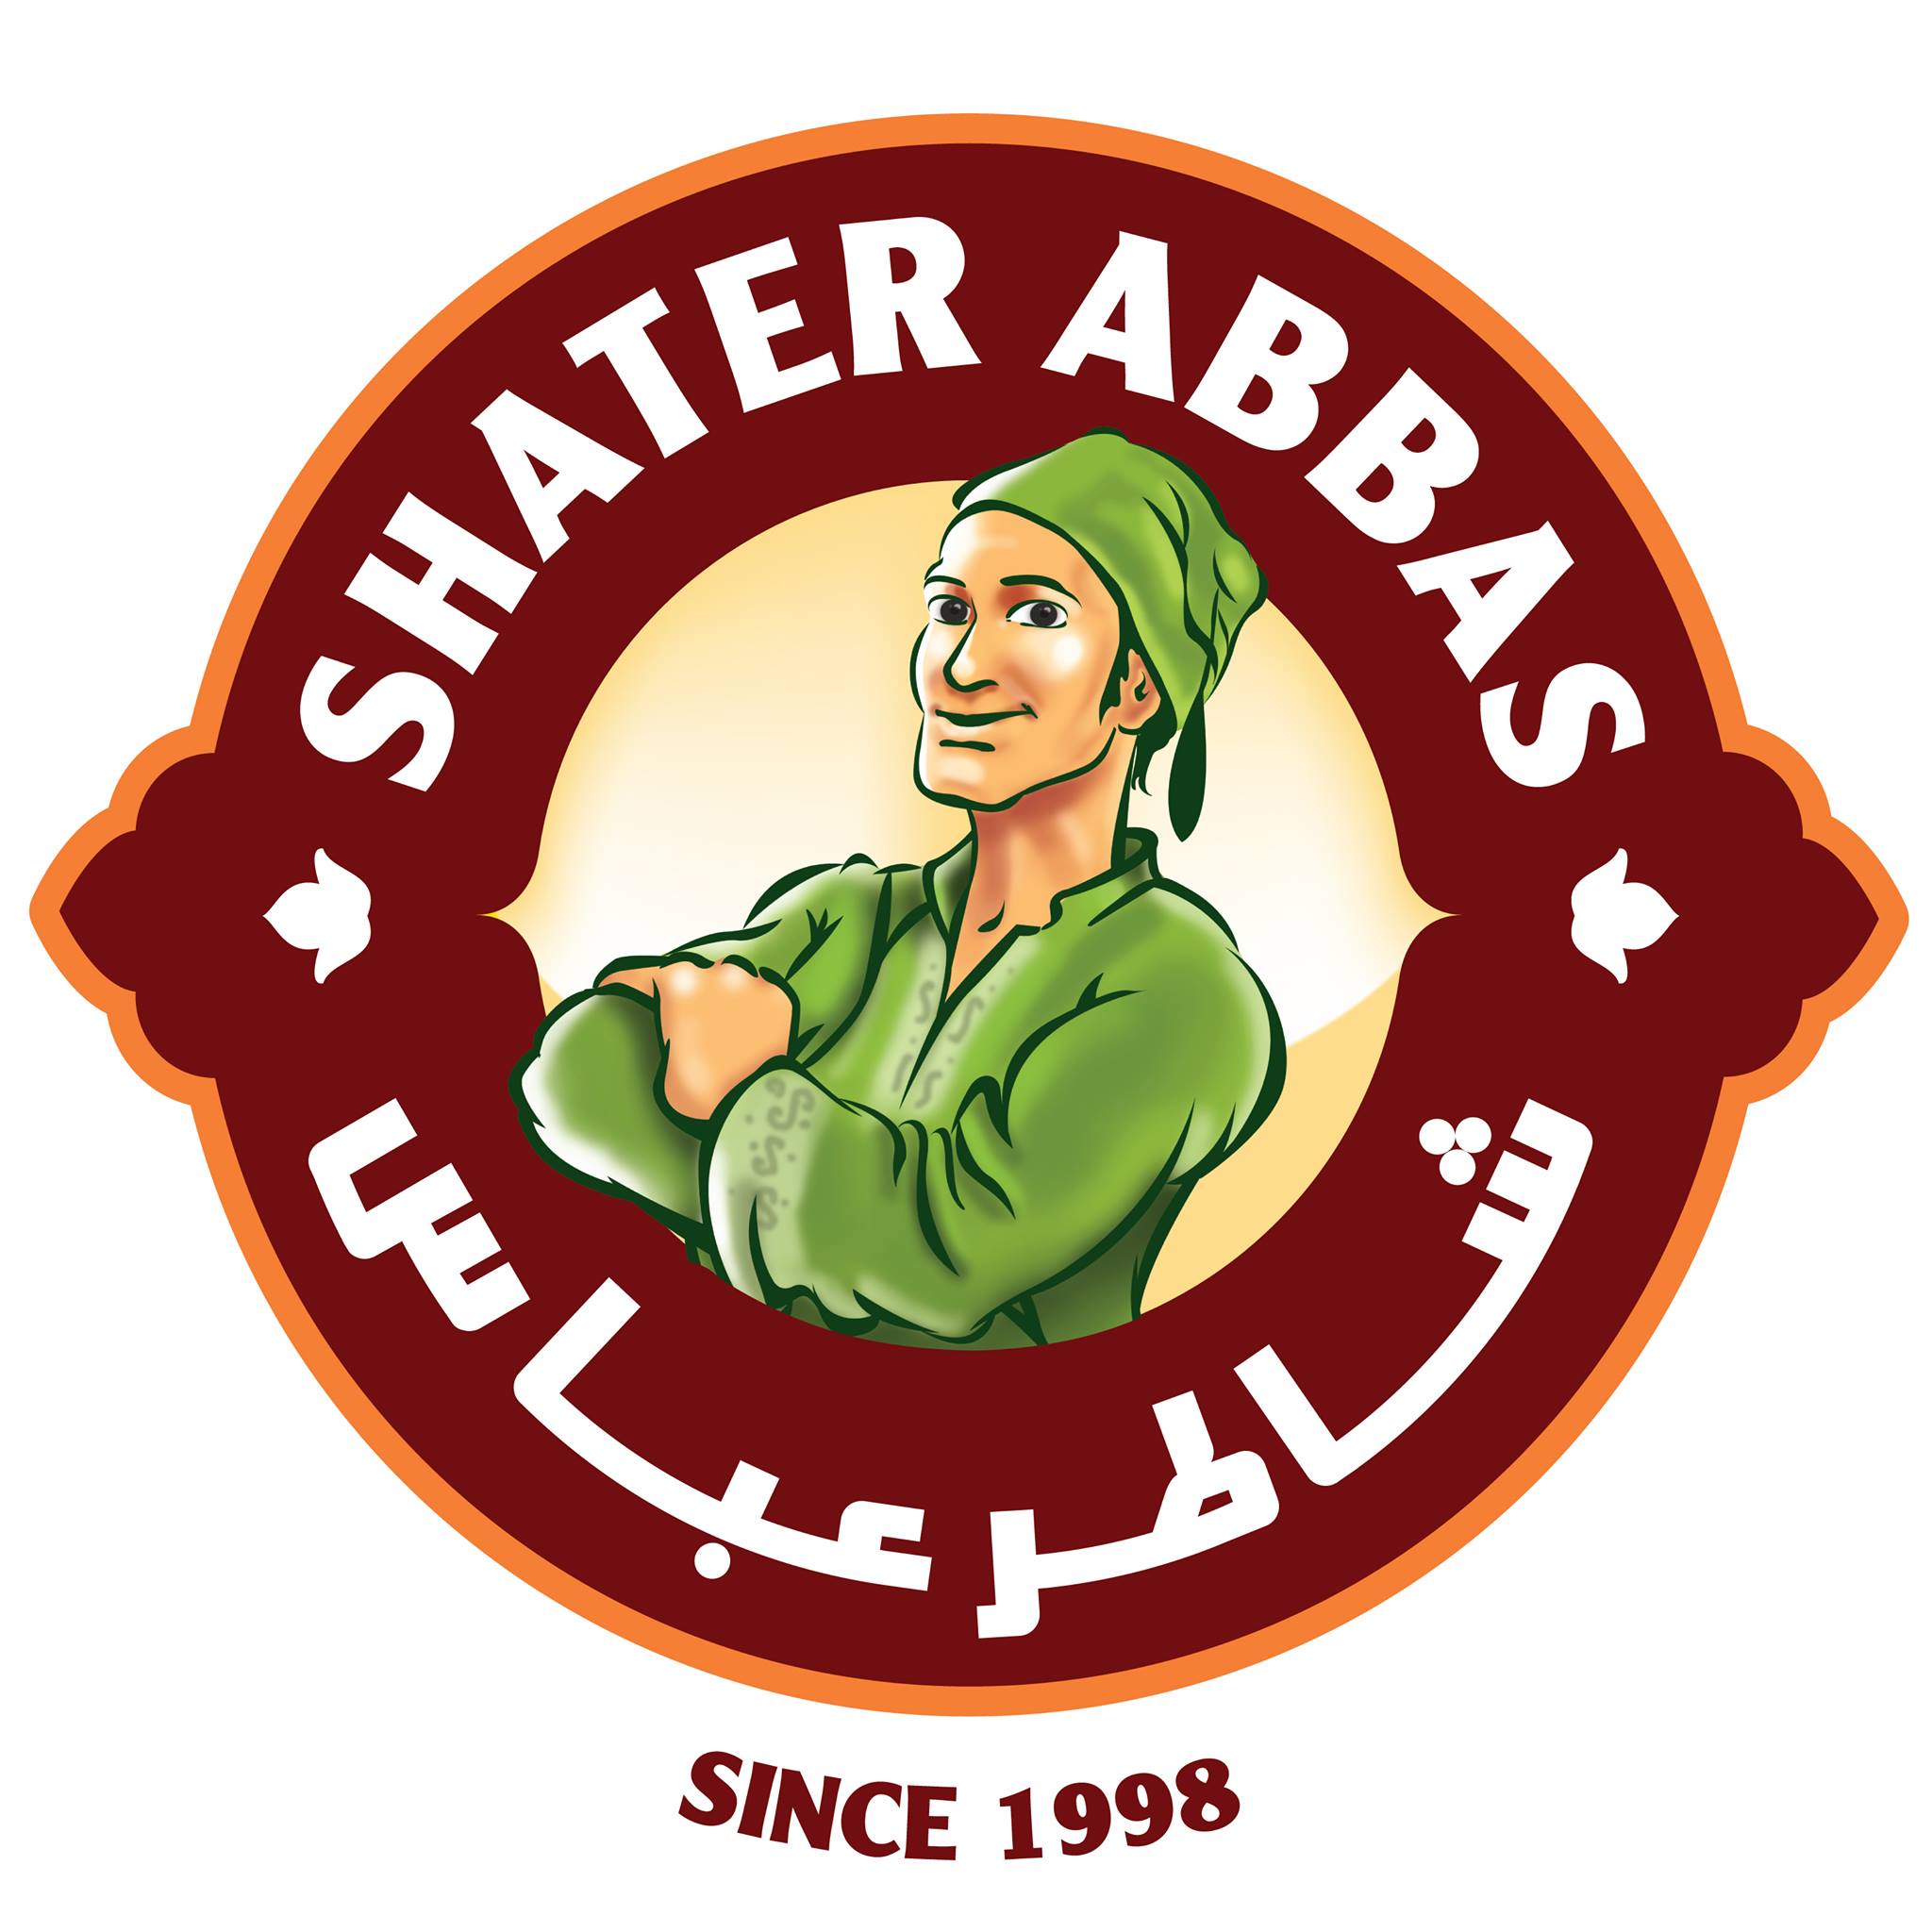 Shater Abbas